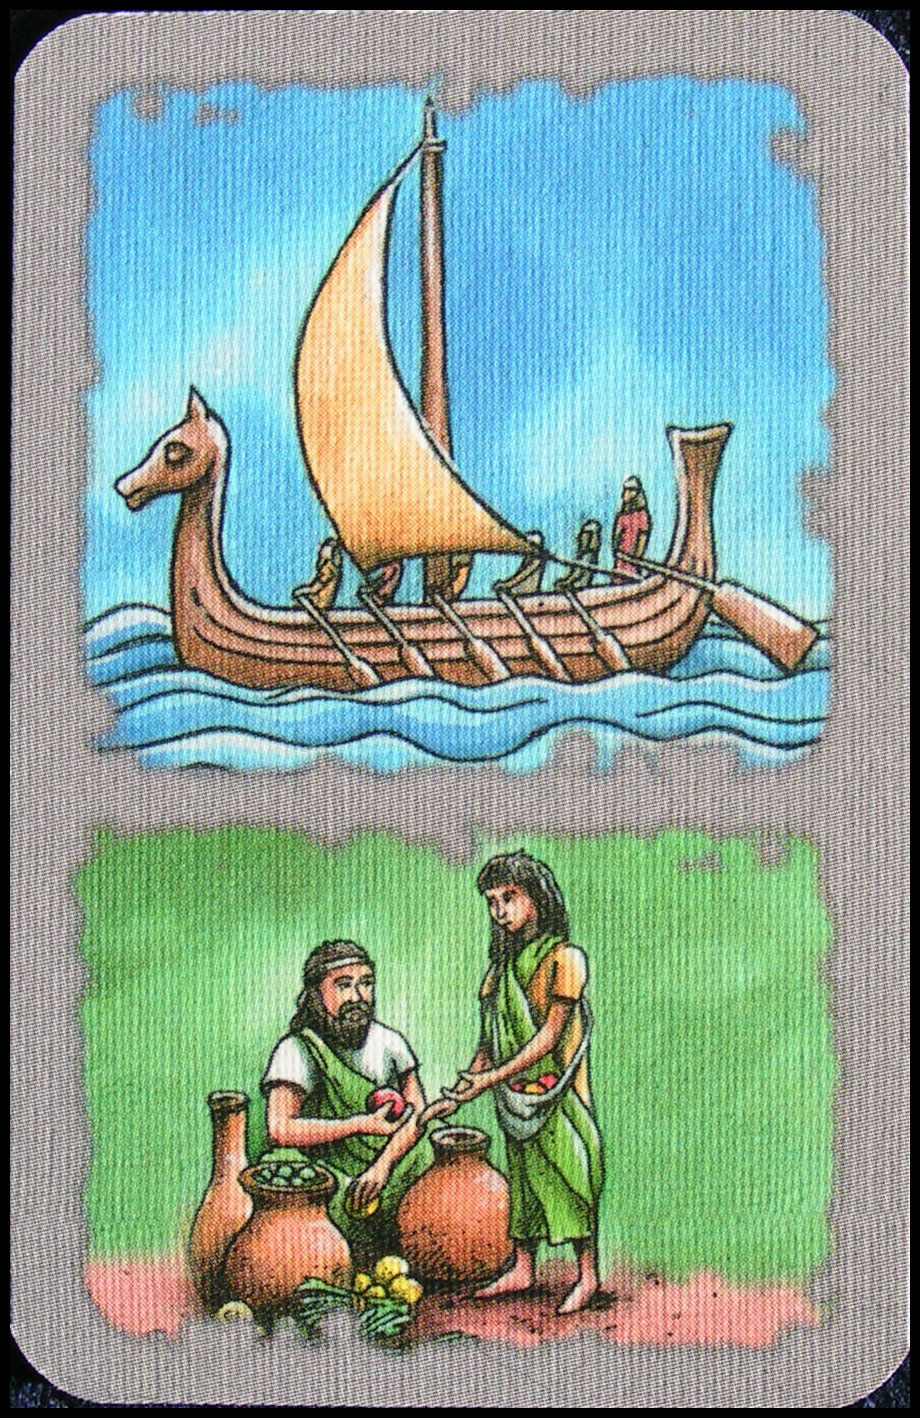 Euphrates & Tigris: Contest Of Kings - Green Ship Card